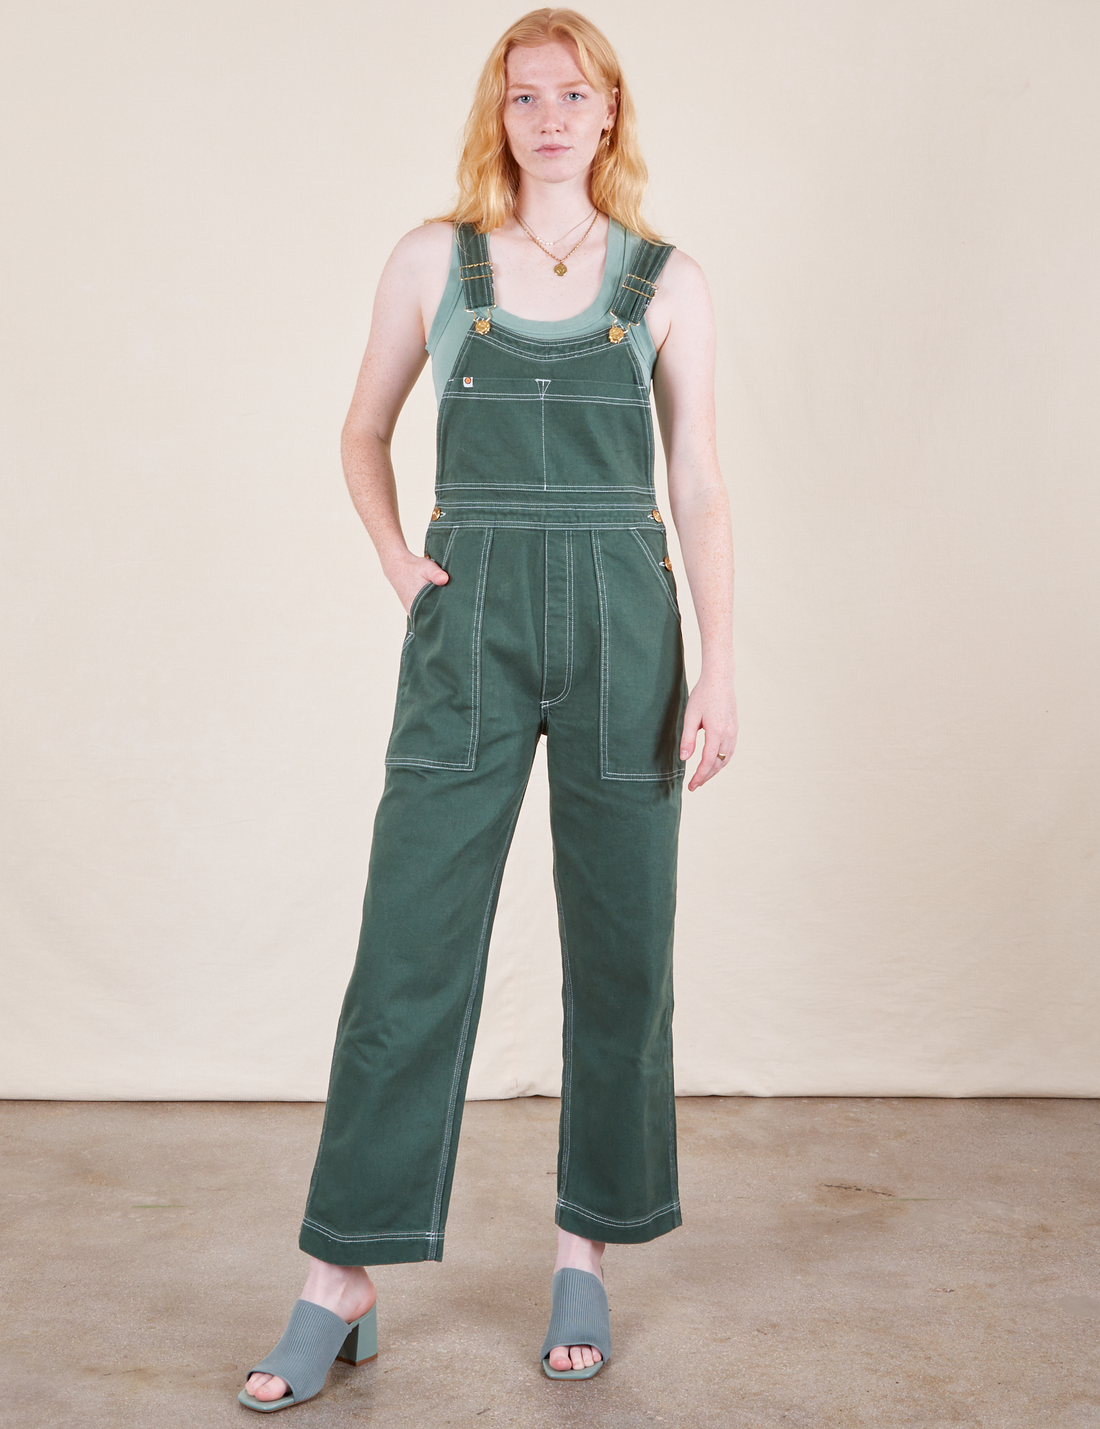 Margaret is 5'11" and wearing XXS Original Overalls in Dark Emerald Green